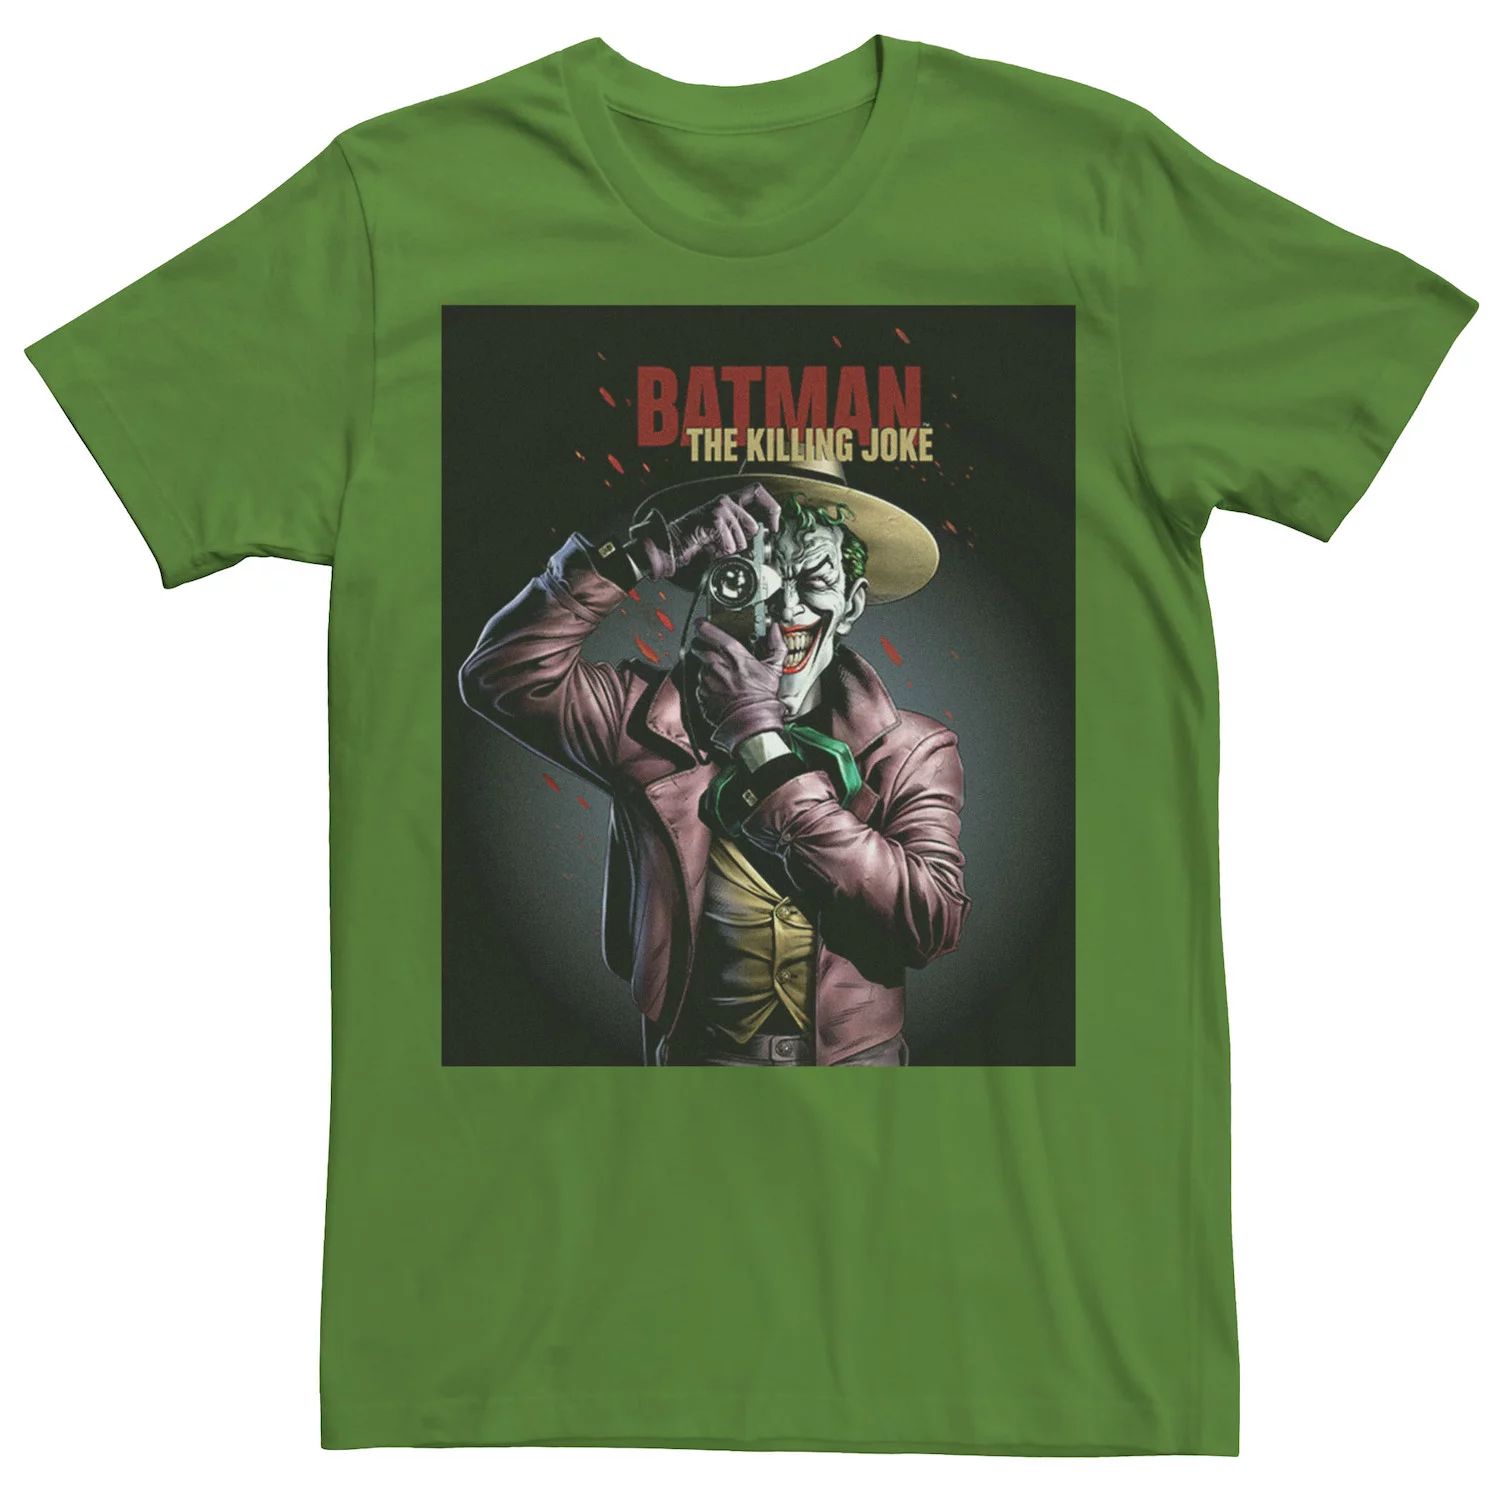 Мужская футболка с плакатом Batman The Killing Joke Joker DC Comics мужская футболка batman the killing joke dc comics